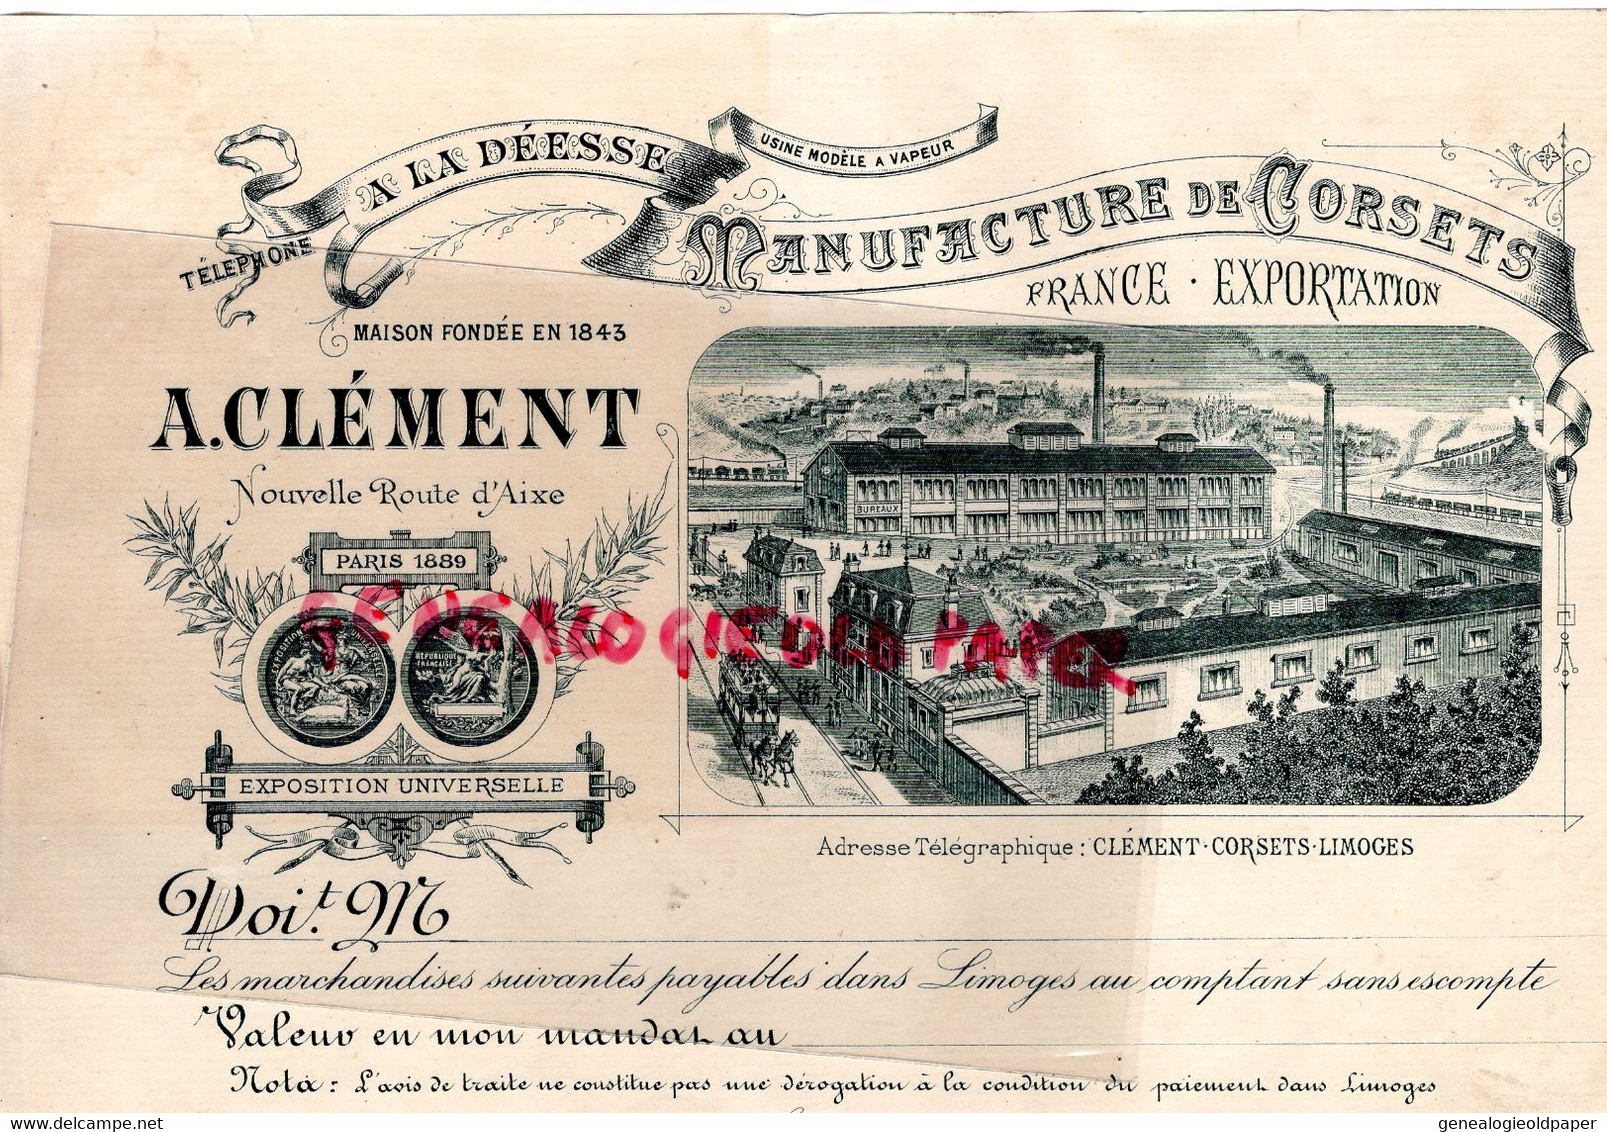 87 - LIMOGES - RARE FACTURE MANUFACTURE LINGERIE -CORSETS " A LA DEESSE " A. CLEMENT NOUVELLE ROUTE D' AIXE - PARIS 1889 - Textile & Vestimentaire